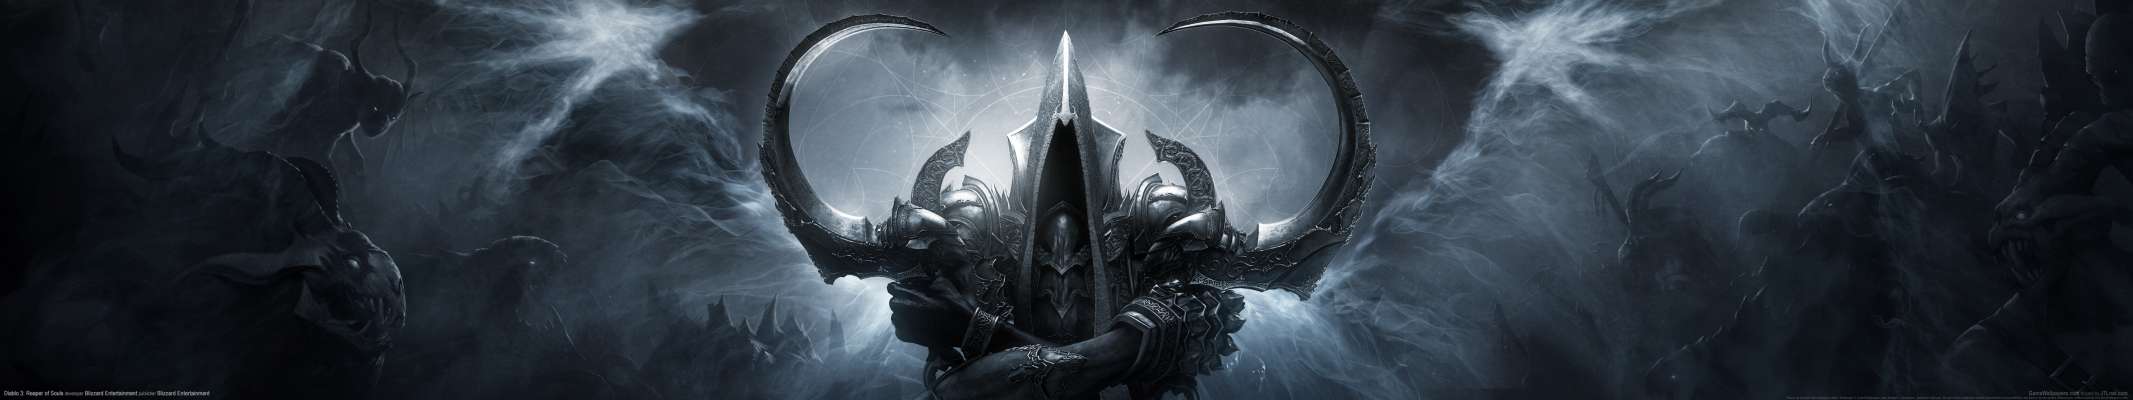 Diablo 3: Reaper of Souls triple screen wallpaper or background